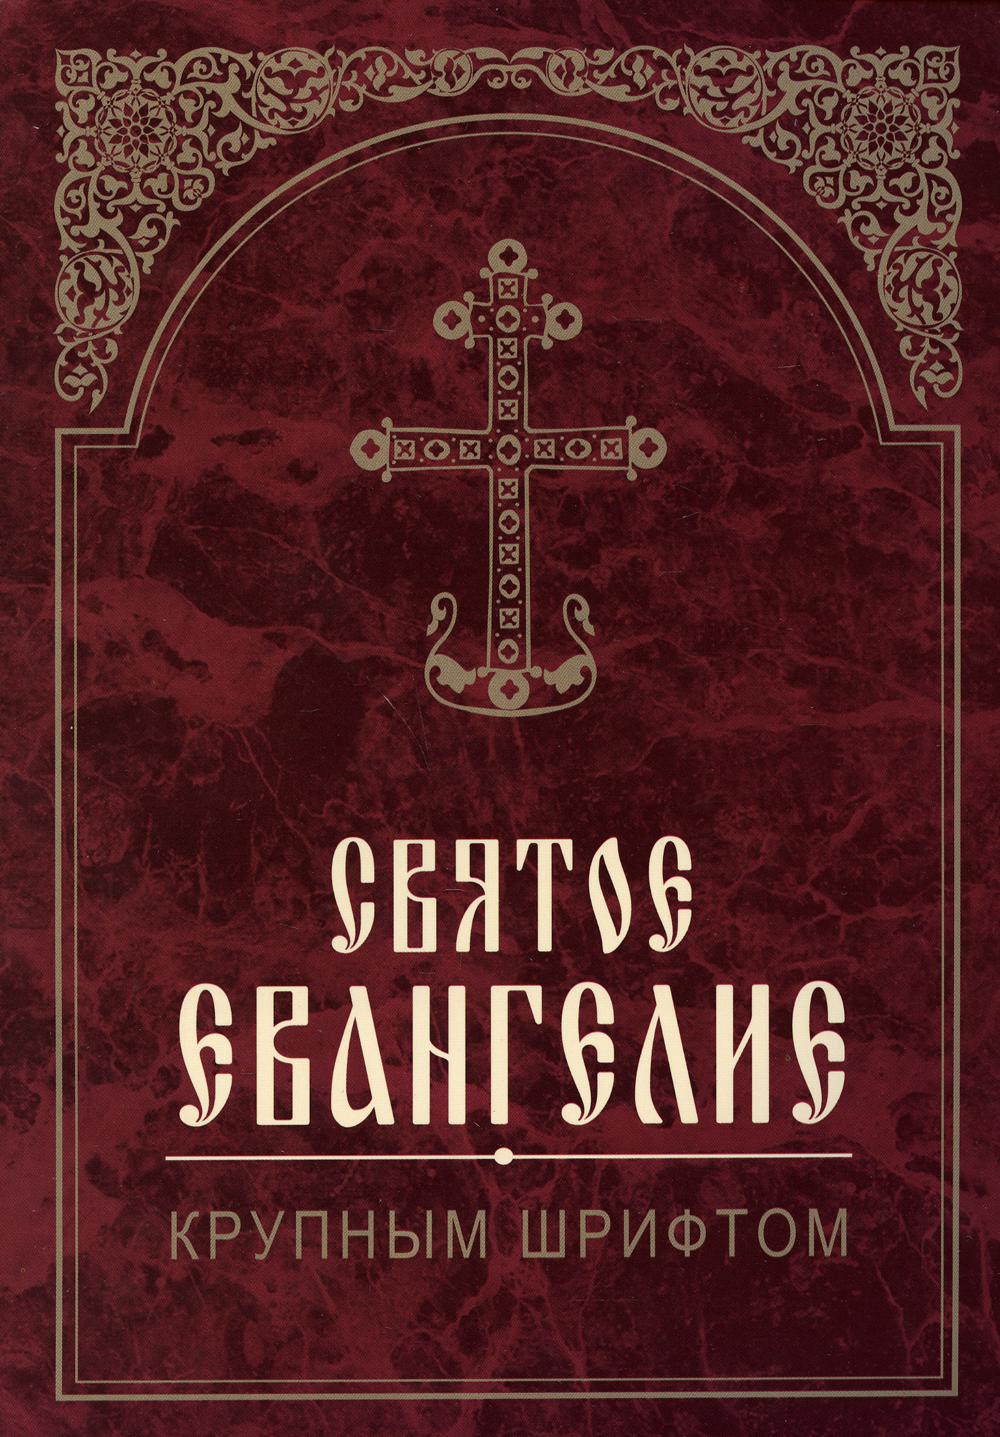 Книга Святое Евангелие. 2-е изд. (крупным шрифтом)